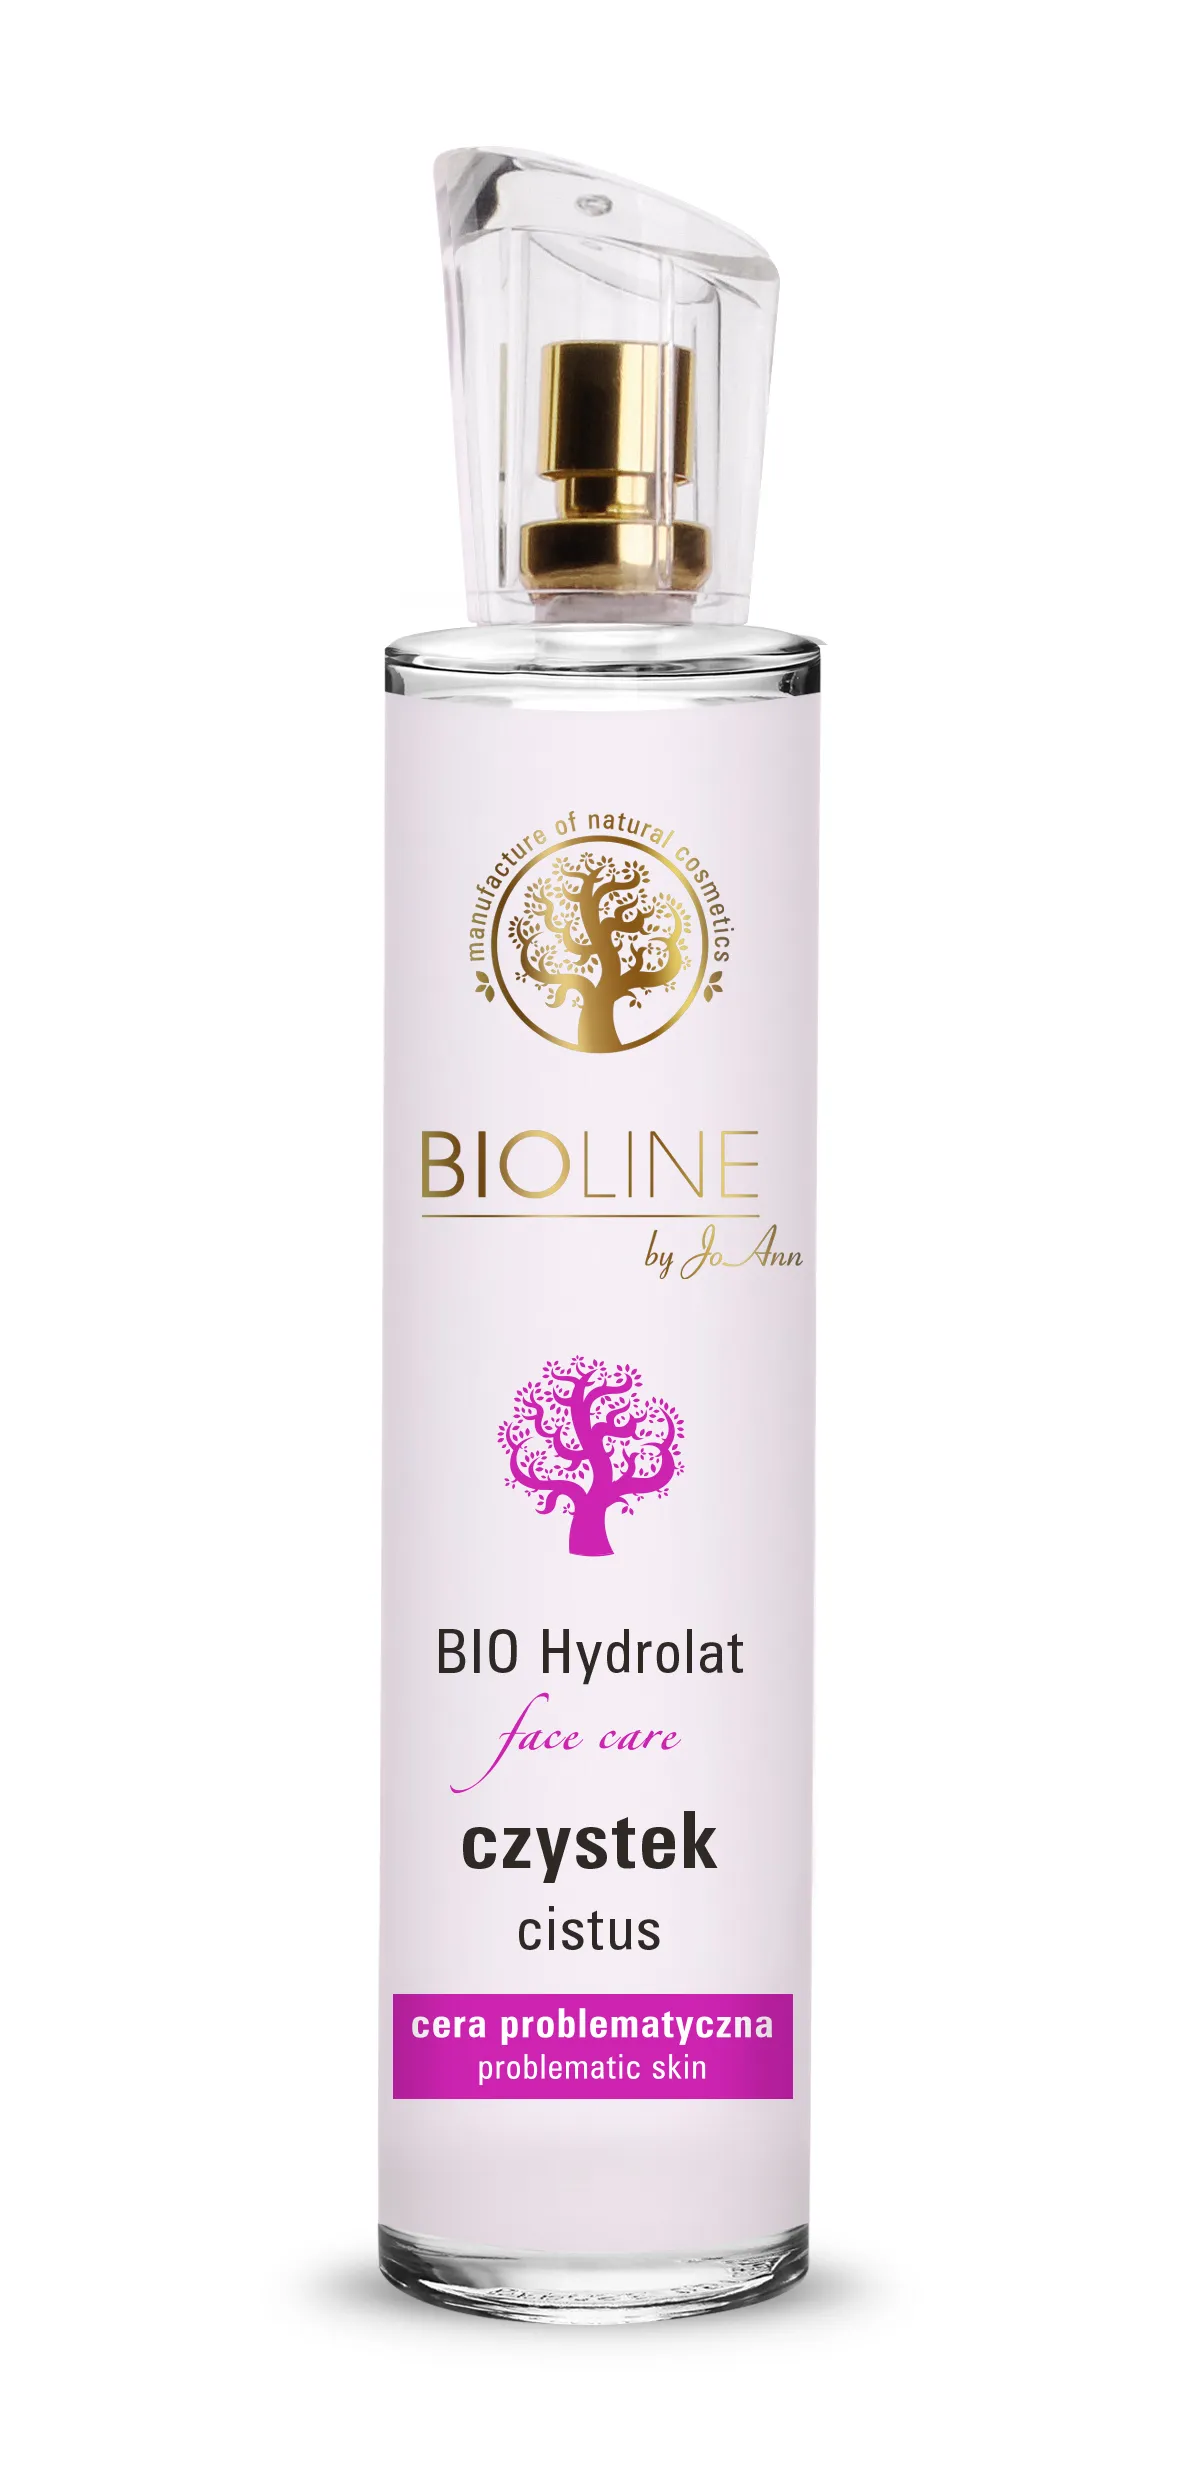 Bioline by JoAnn BIO hydrolat z czystka, 75 ml